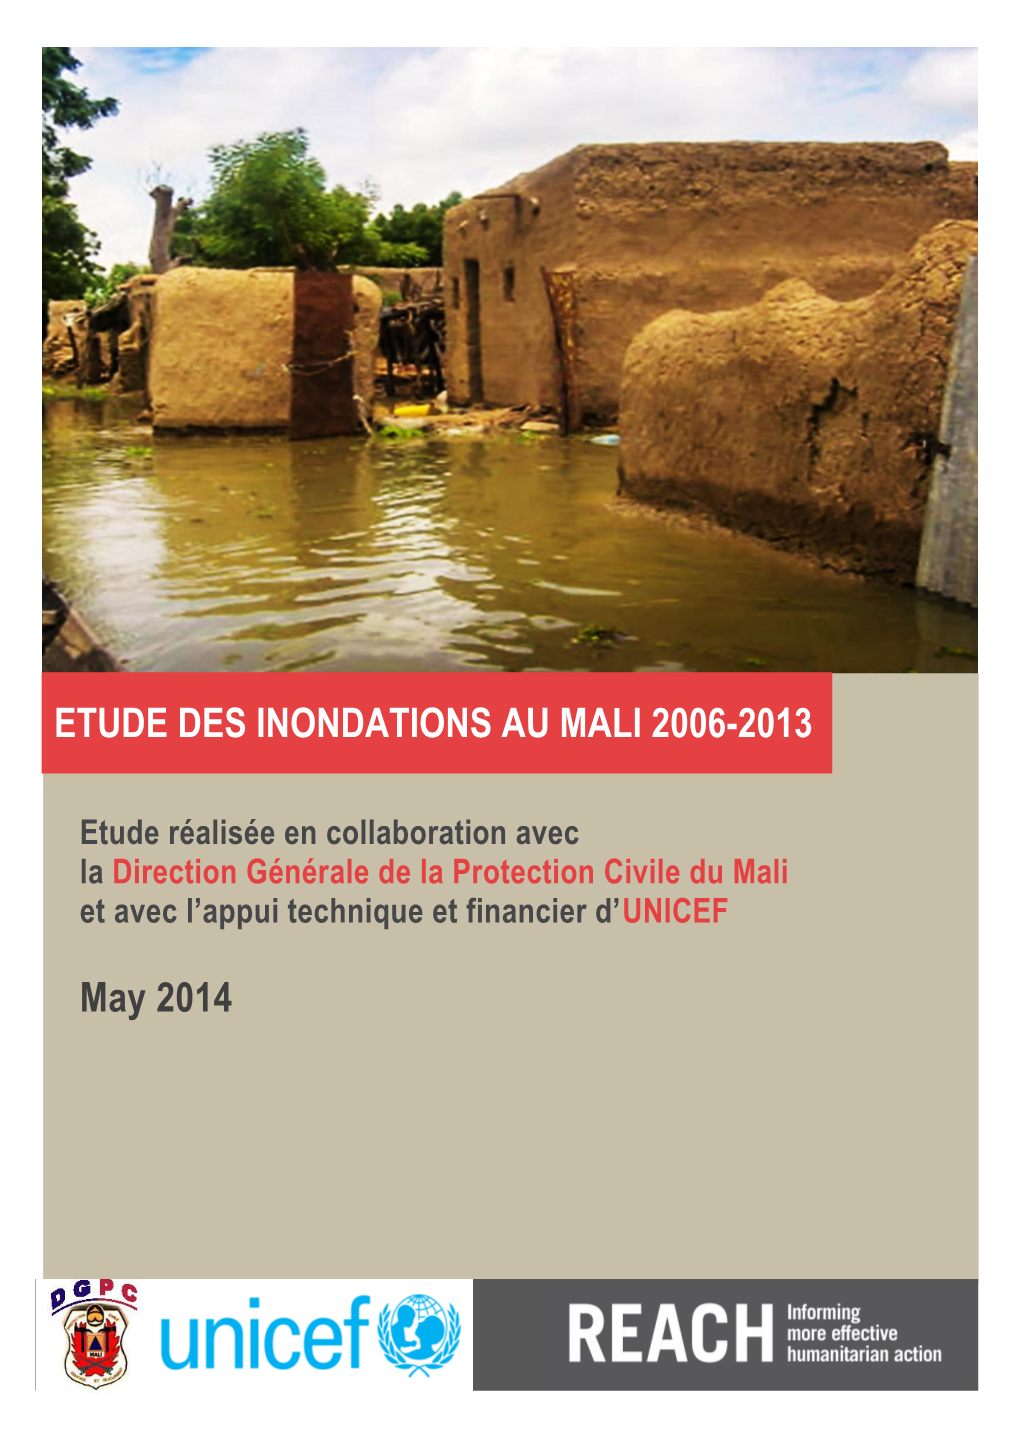 May 2014 ETUDE DES INONDATIONS AU MALI 2006-2013